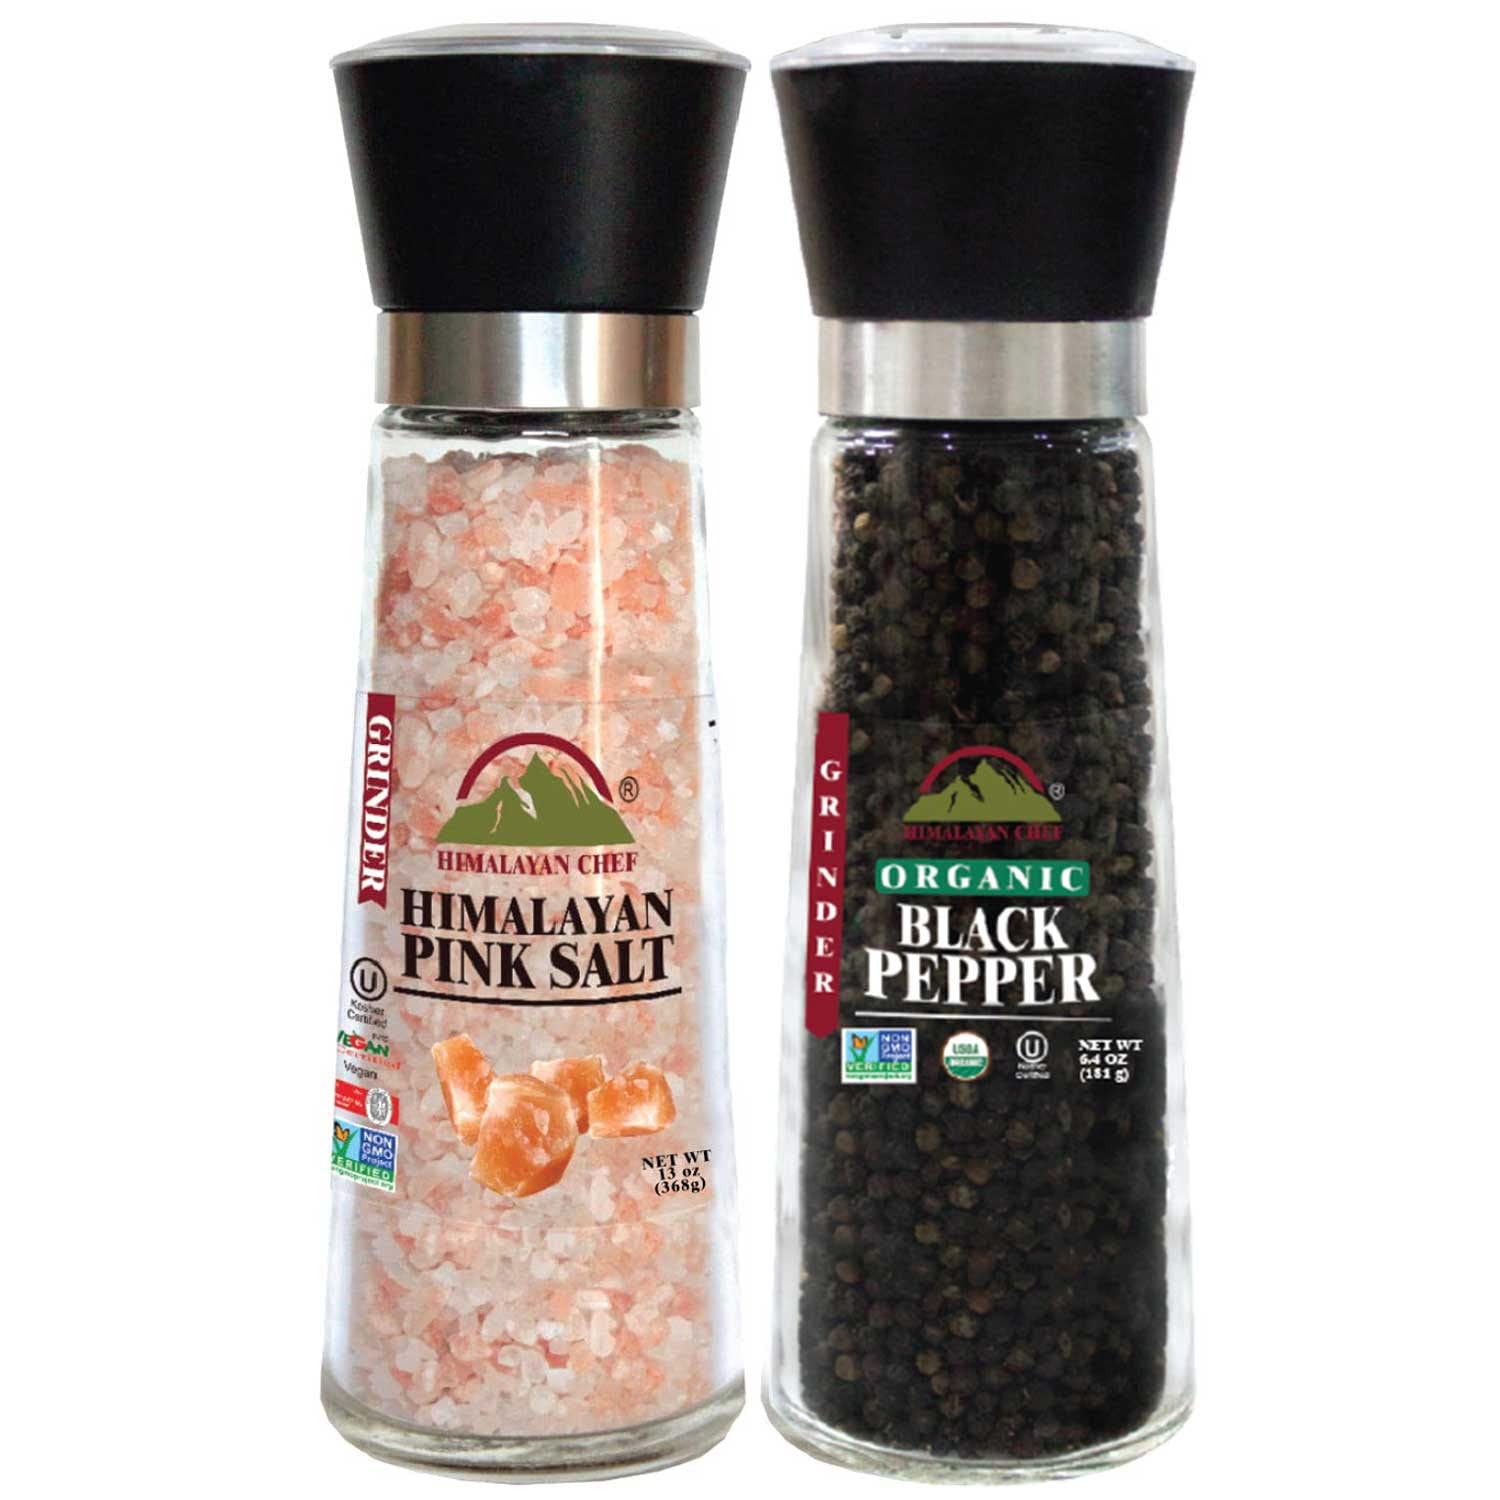 Salt and Pepper Grinder Set of 2 - Adjustable Ceramic Sea Salt Grinder & Pepper Grinder Salt and Pepper Shakers Set - Pepper Mill & Salt Mill, Size